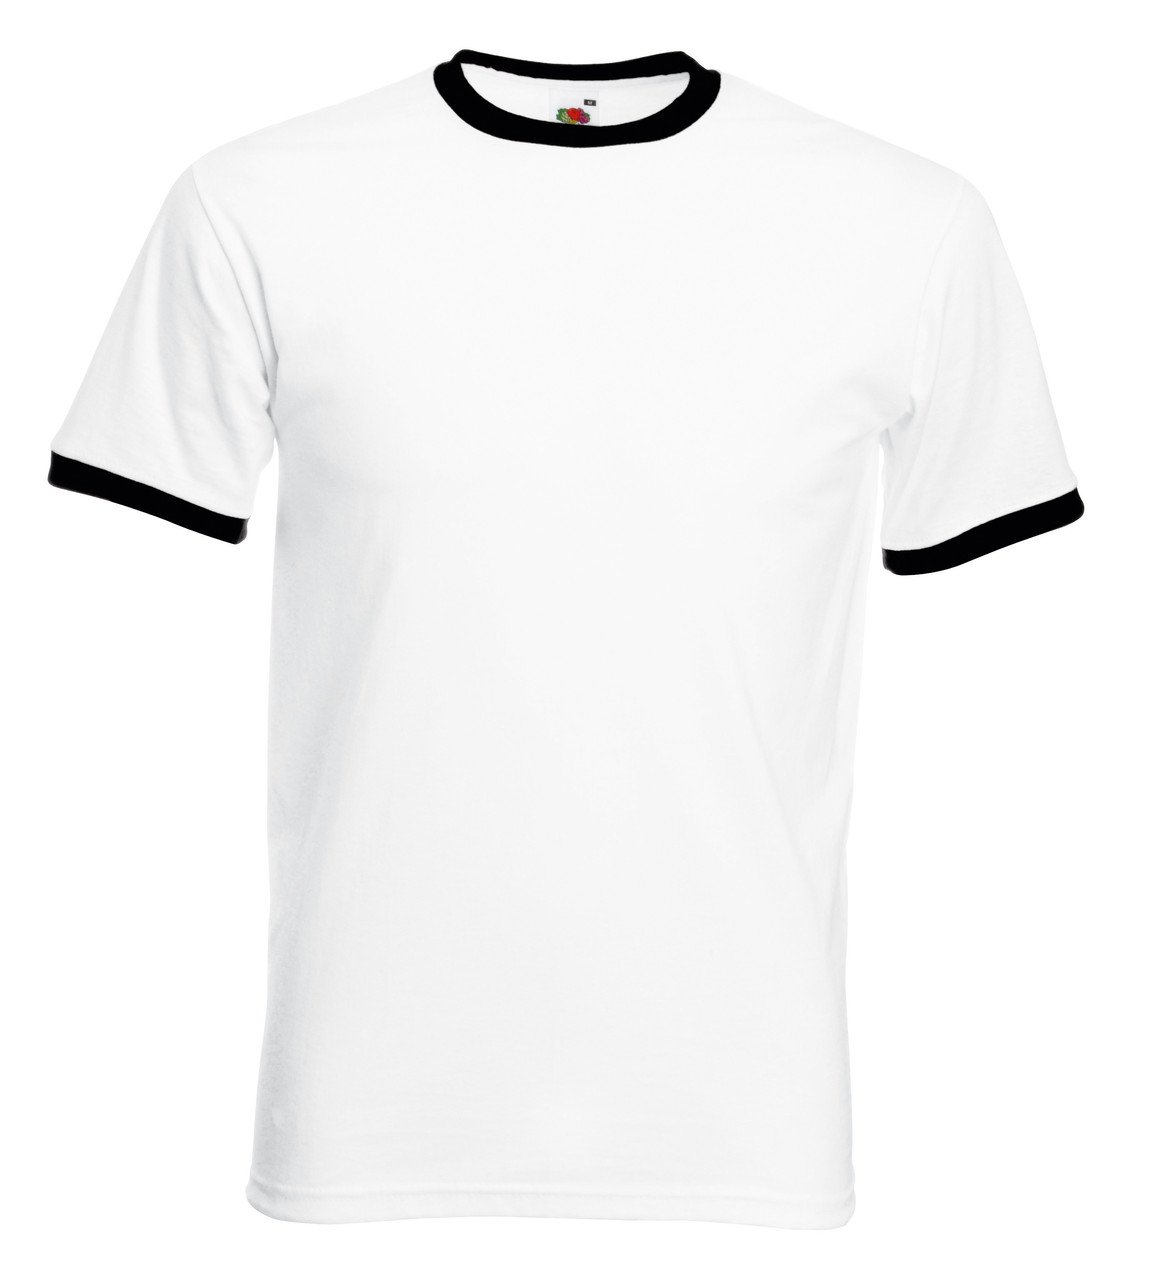 Чоловіча футболка з кольоровою окантовкою Fruit of the loom Білий/Чорний 61-168-Th Xl